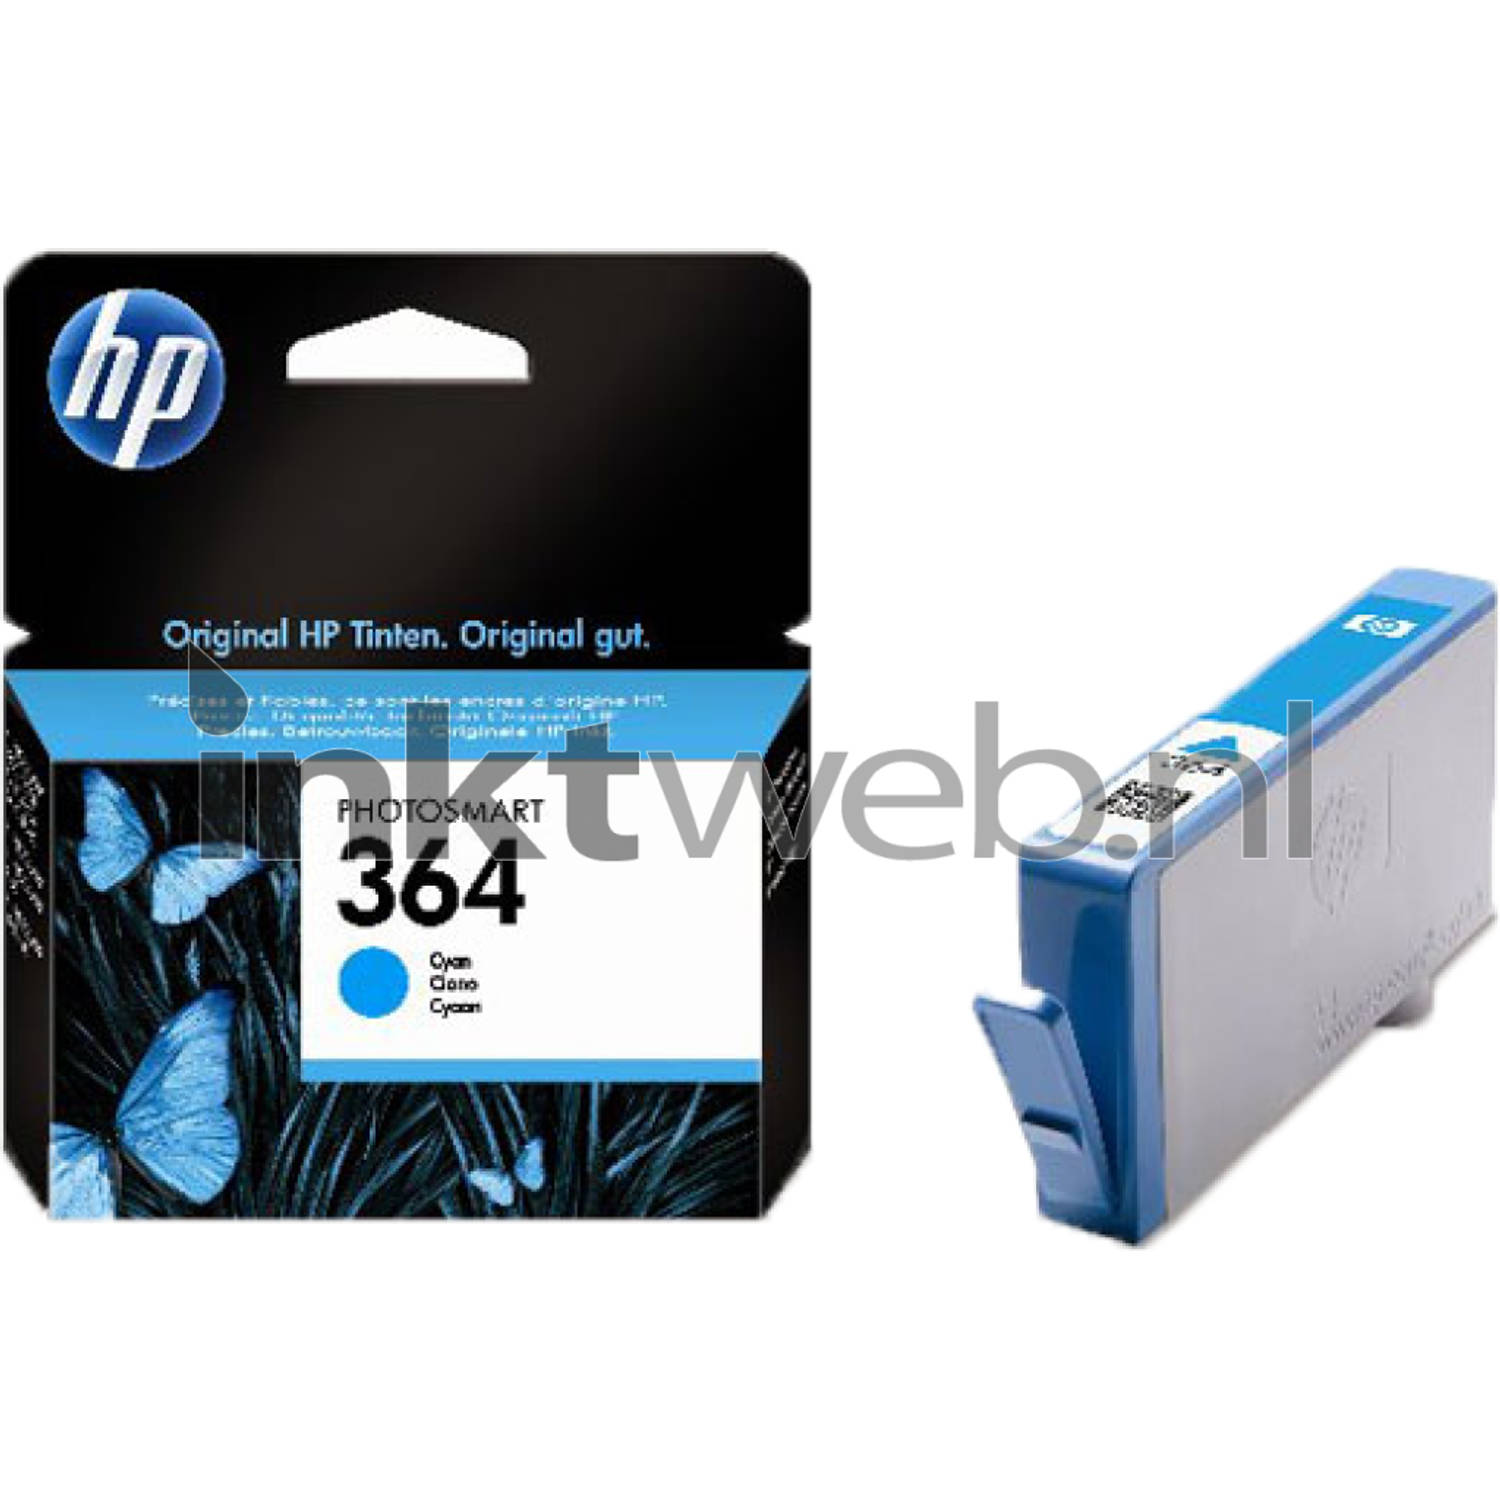 HP 364 Inkcartridge CB318EE Cyaan